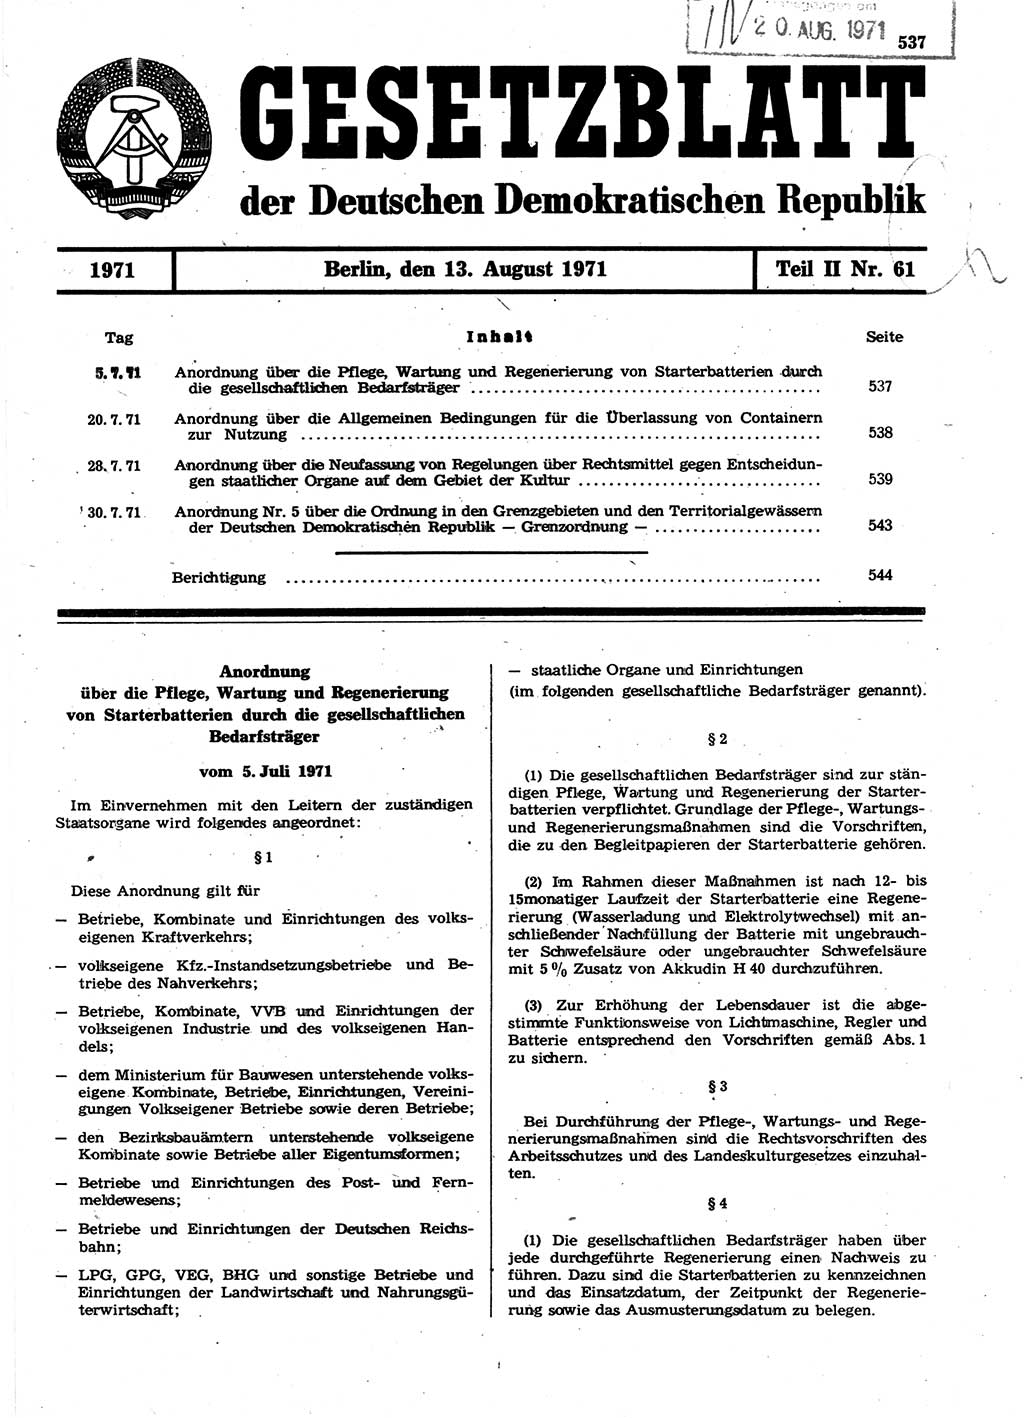 Gesetzblatt (GBl.) der Deutschen Demokratischen Republik (DDR) Teil ⅠⅠ 1971, Seite 537 (GBl. DDR ⅠⅠ 1971, S. 537)